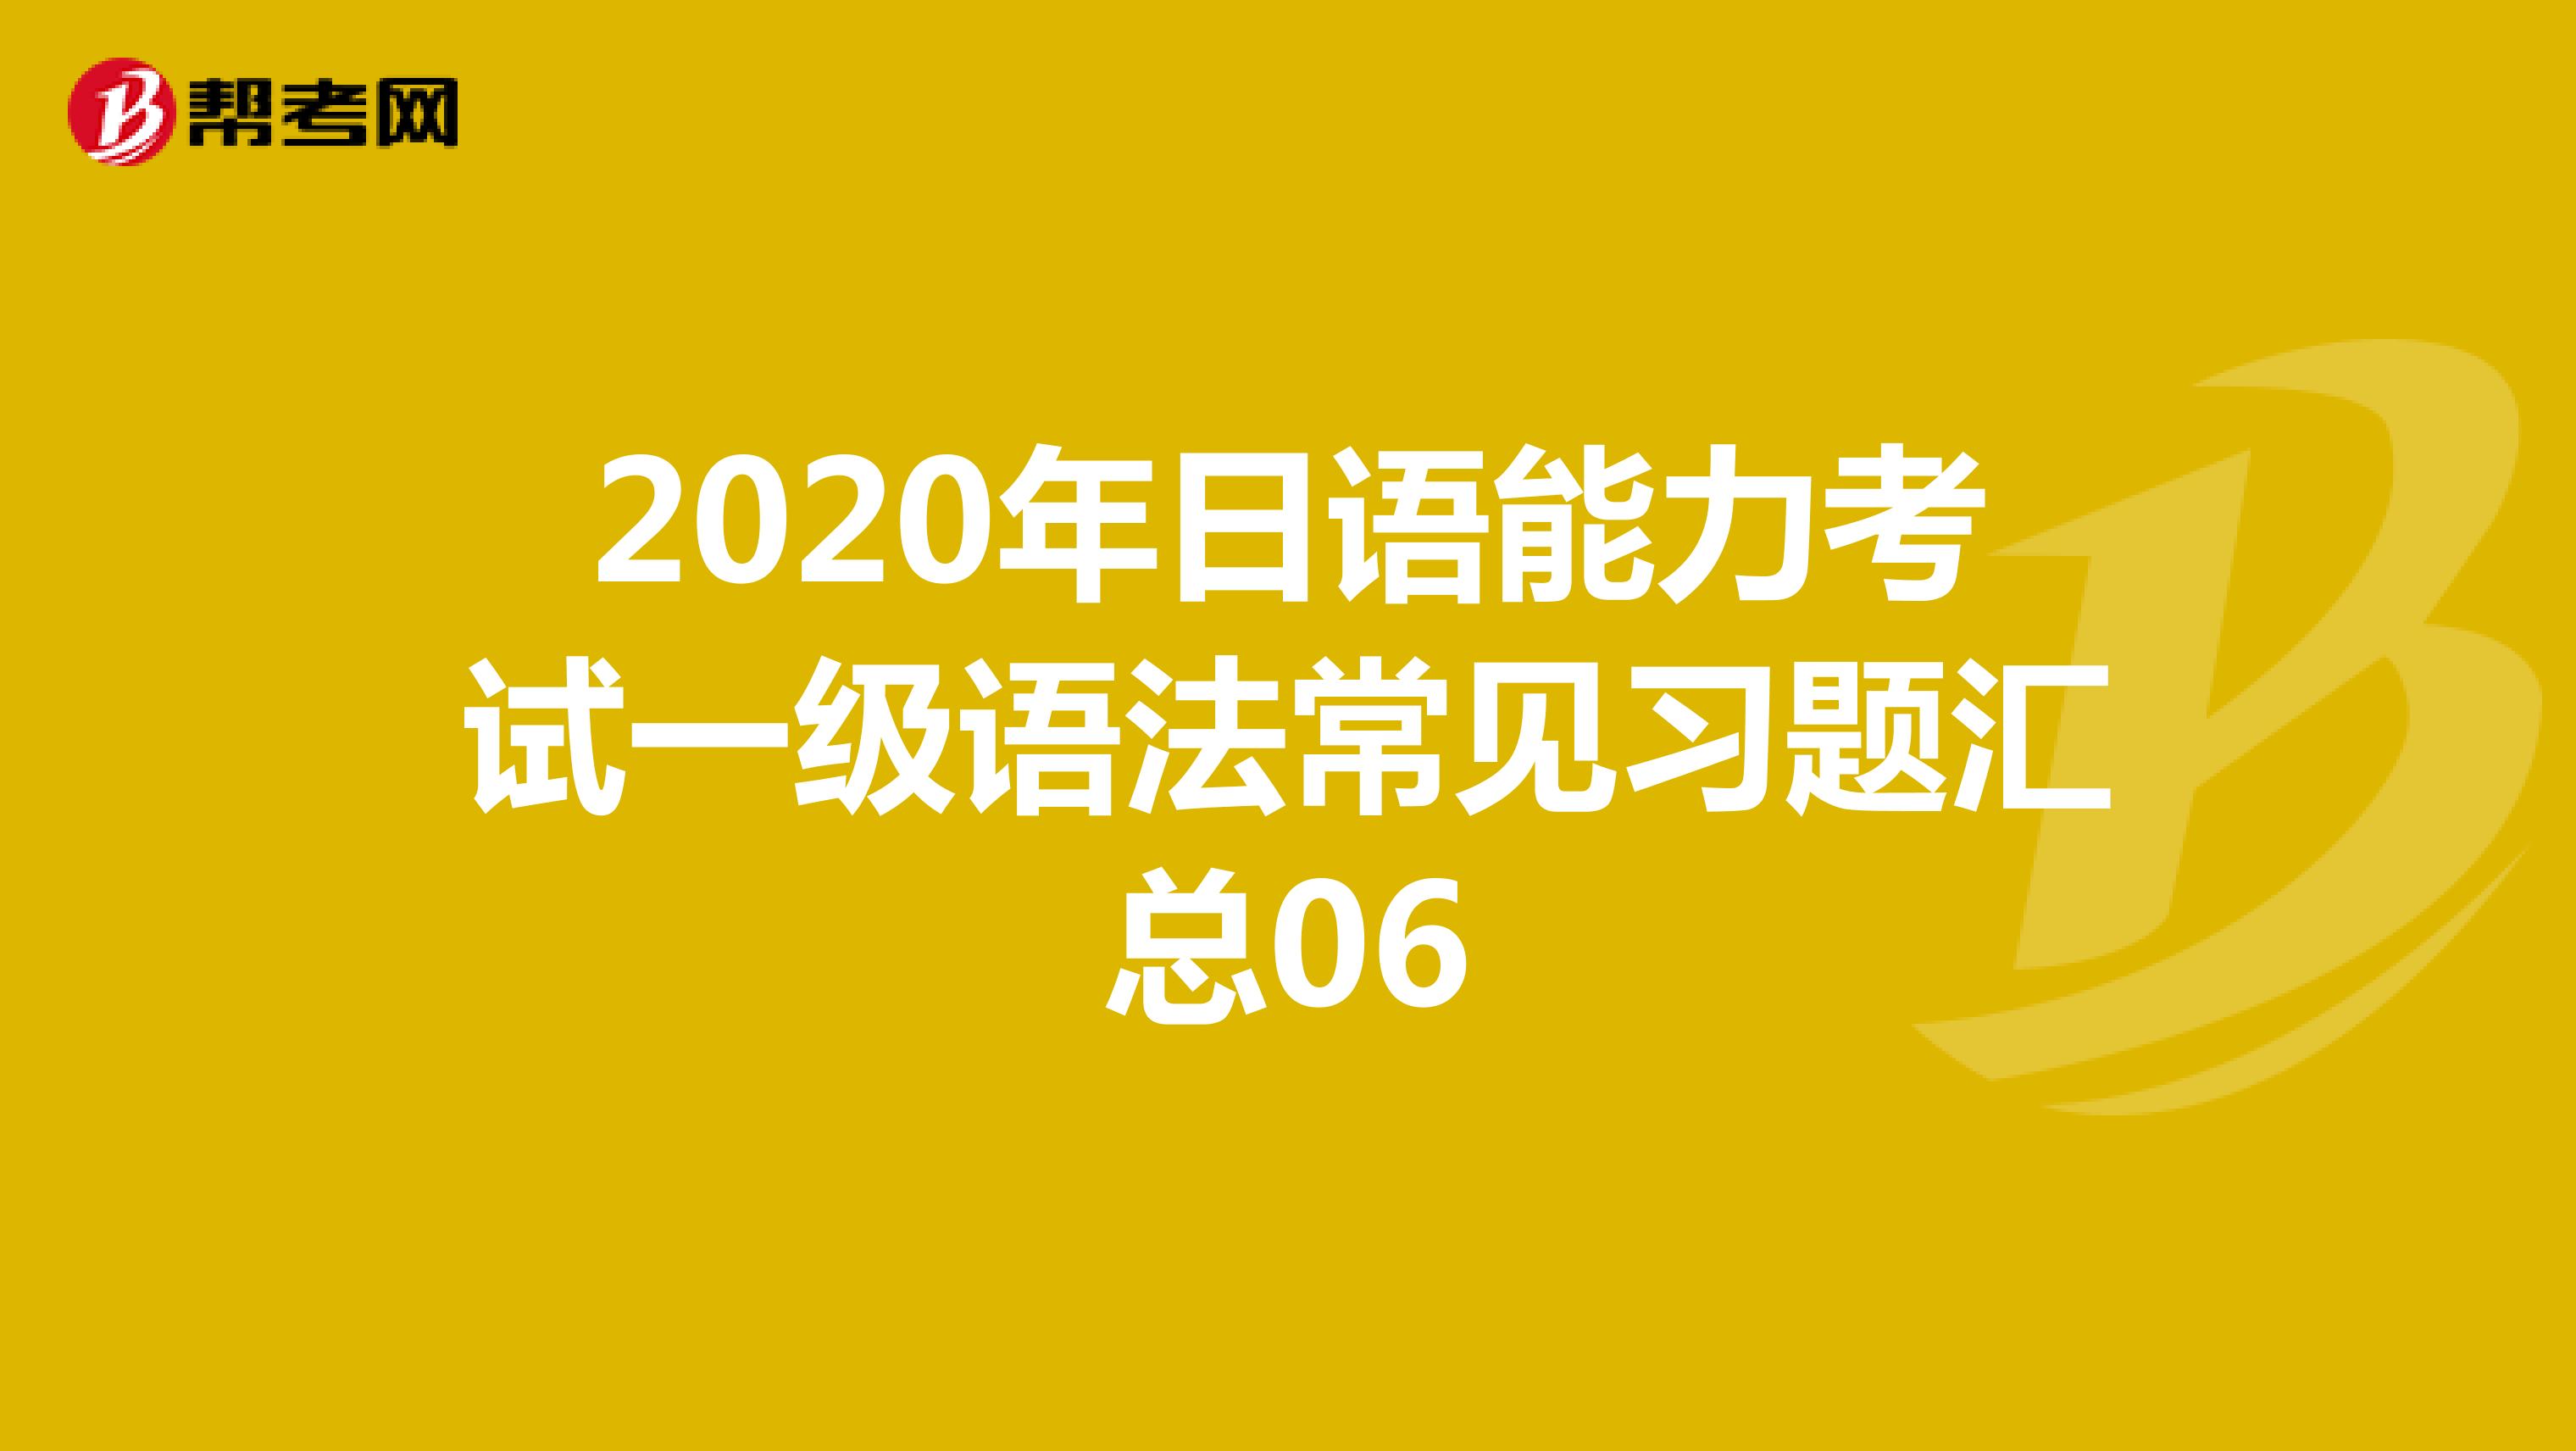 2020年日语能力考试一级语法常见习题汇总06